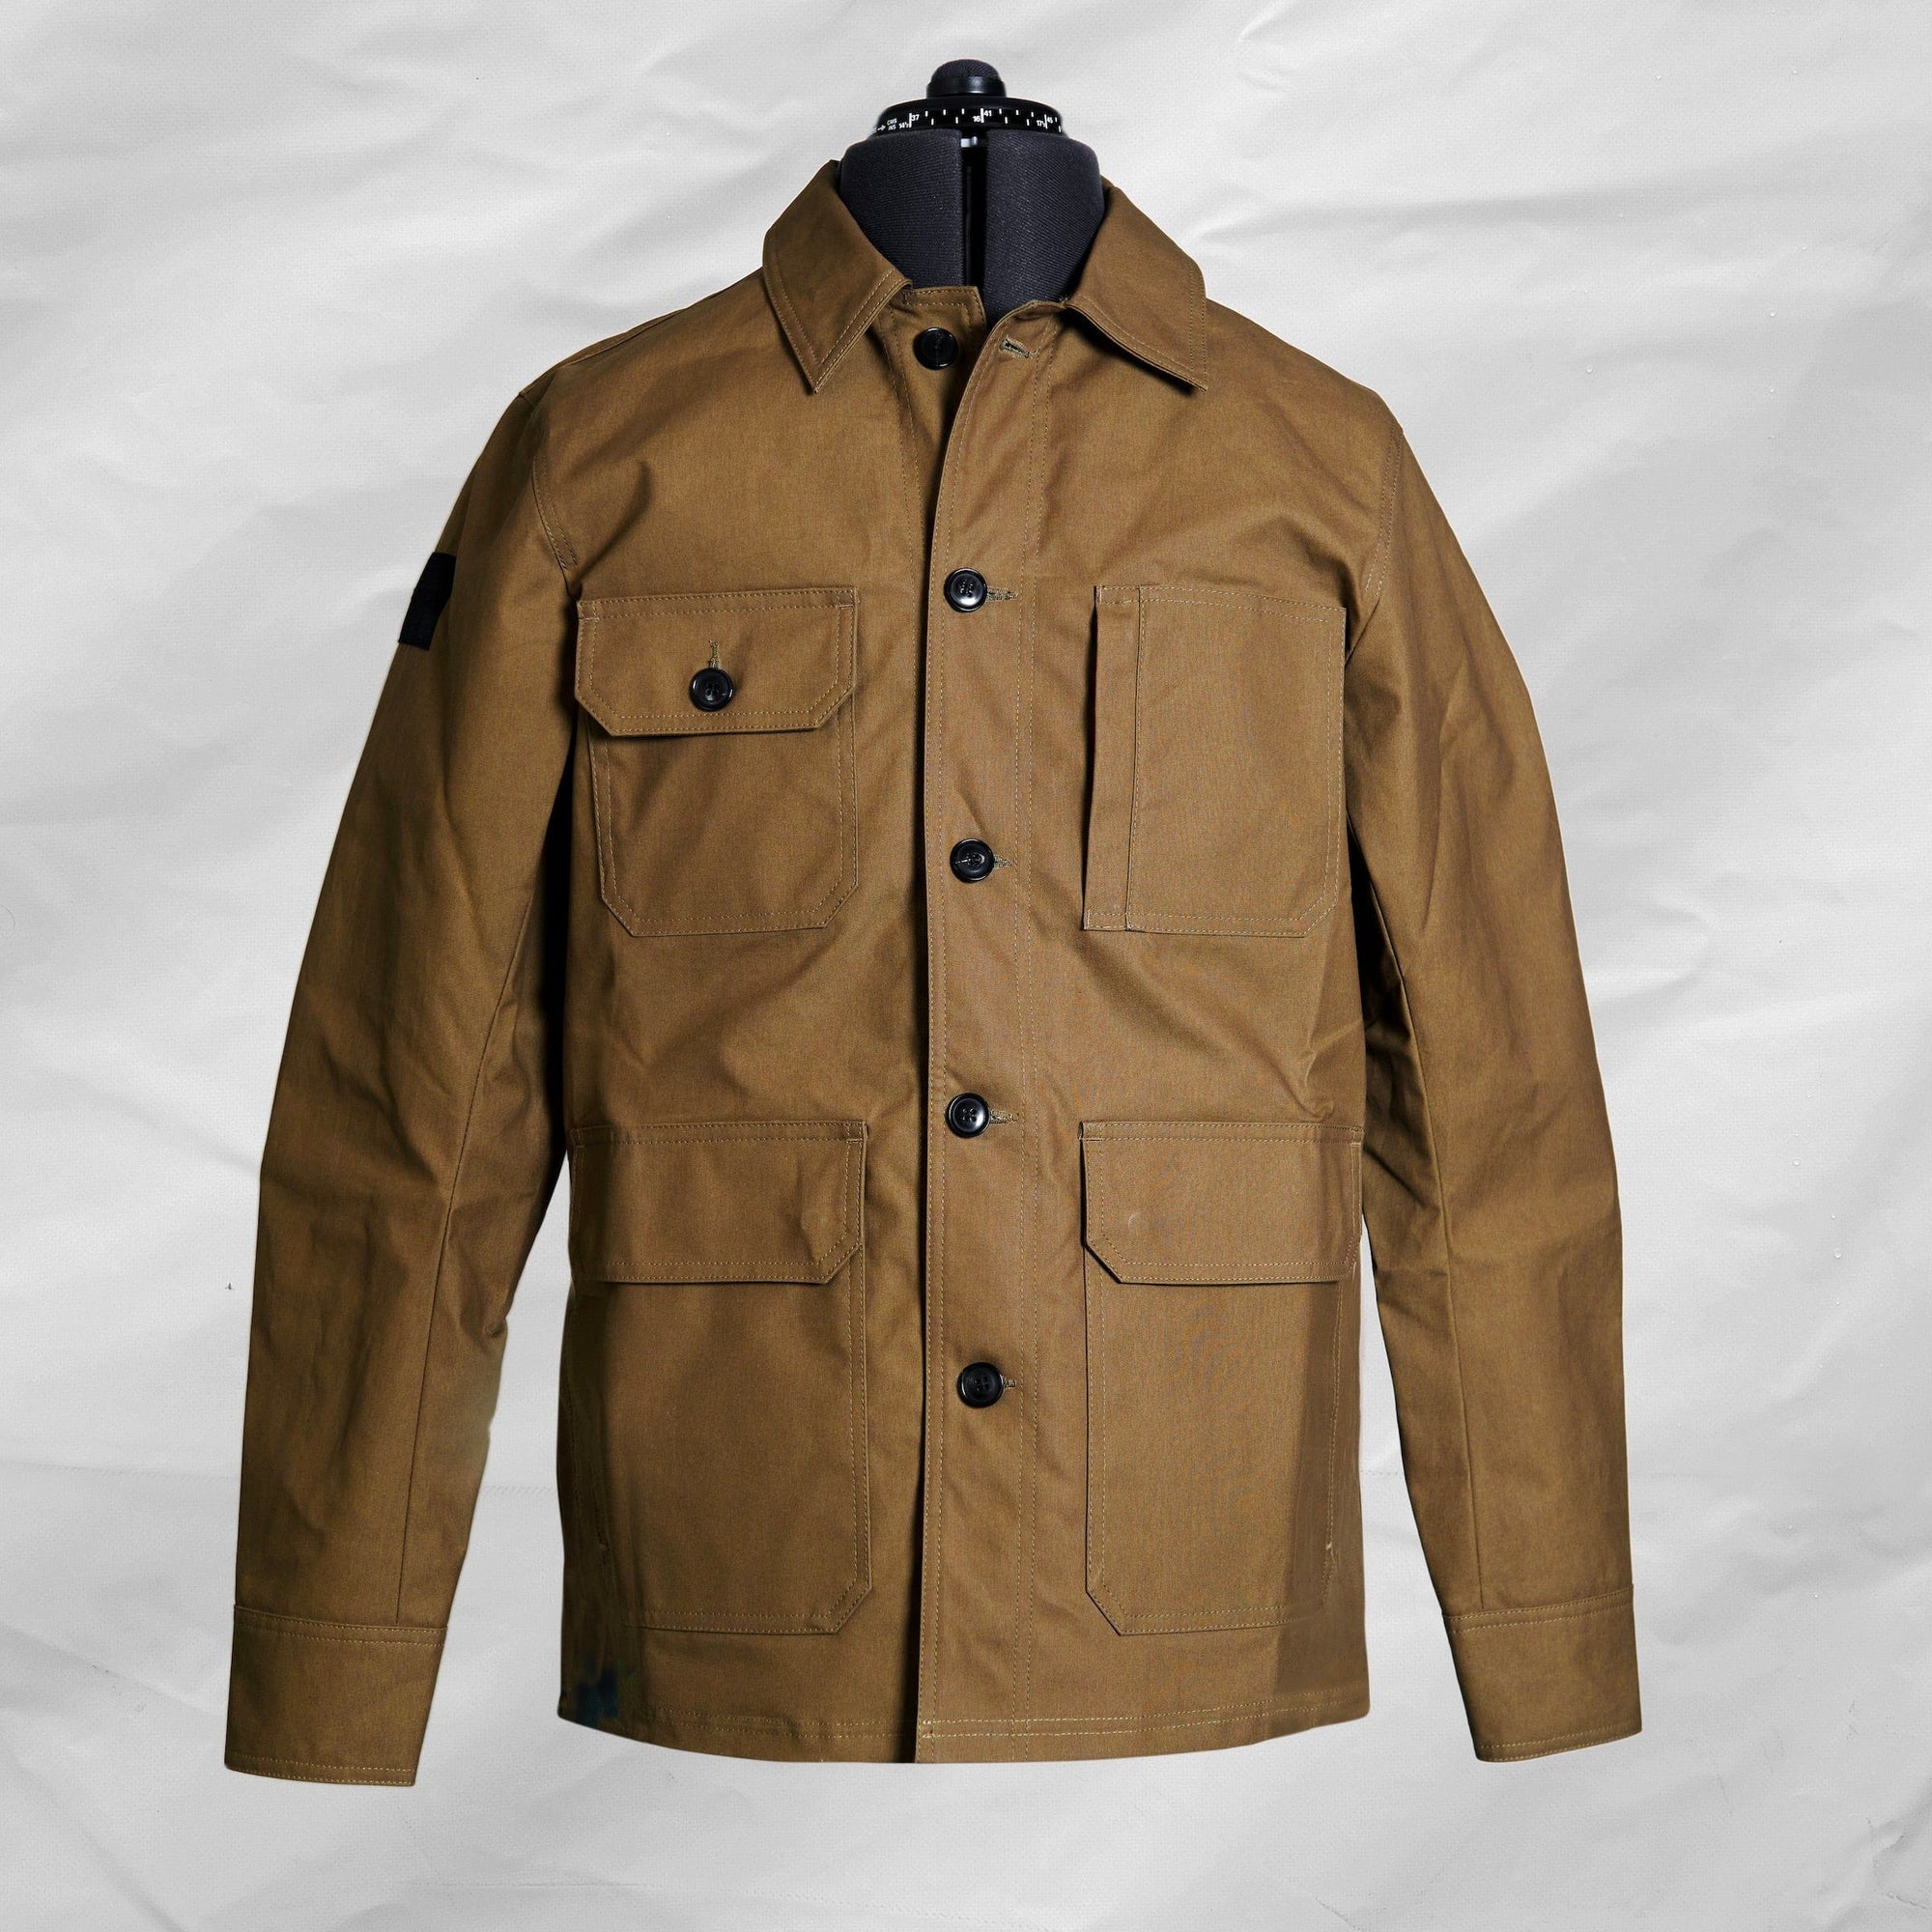 FRAHM Jacket Jacket Woodland Worker's Jacket